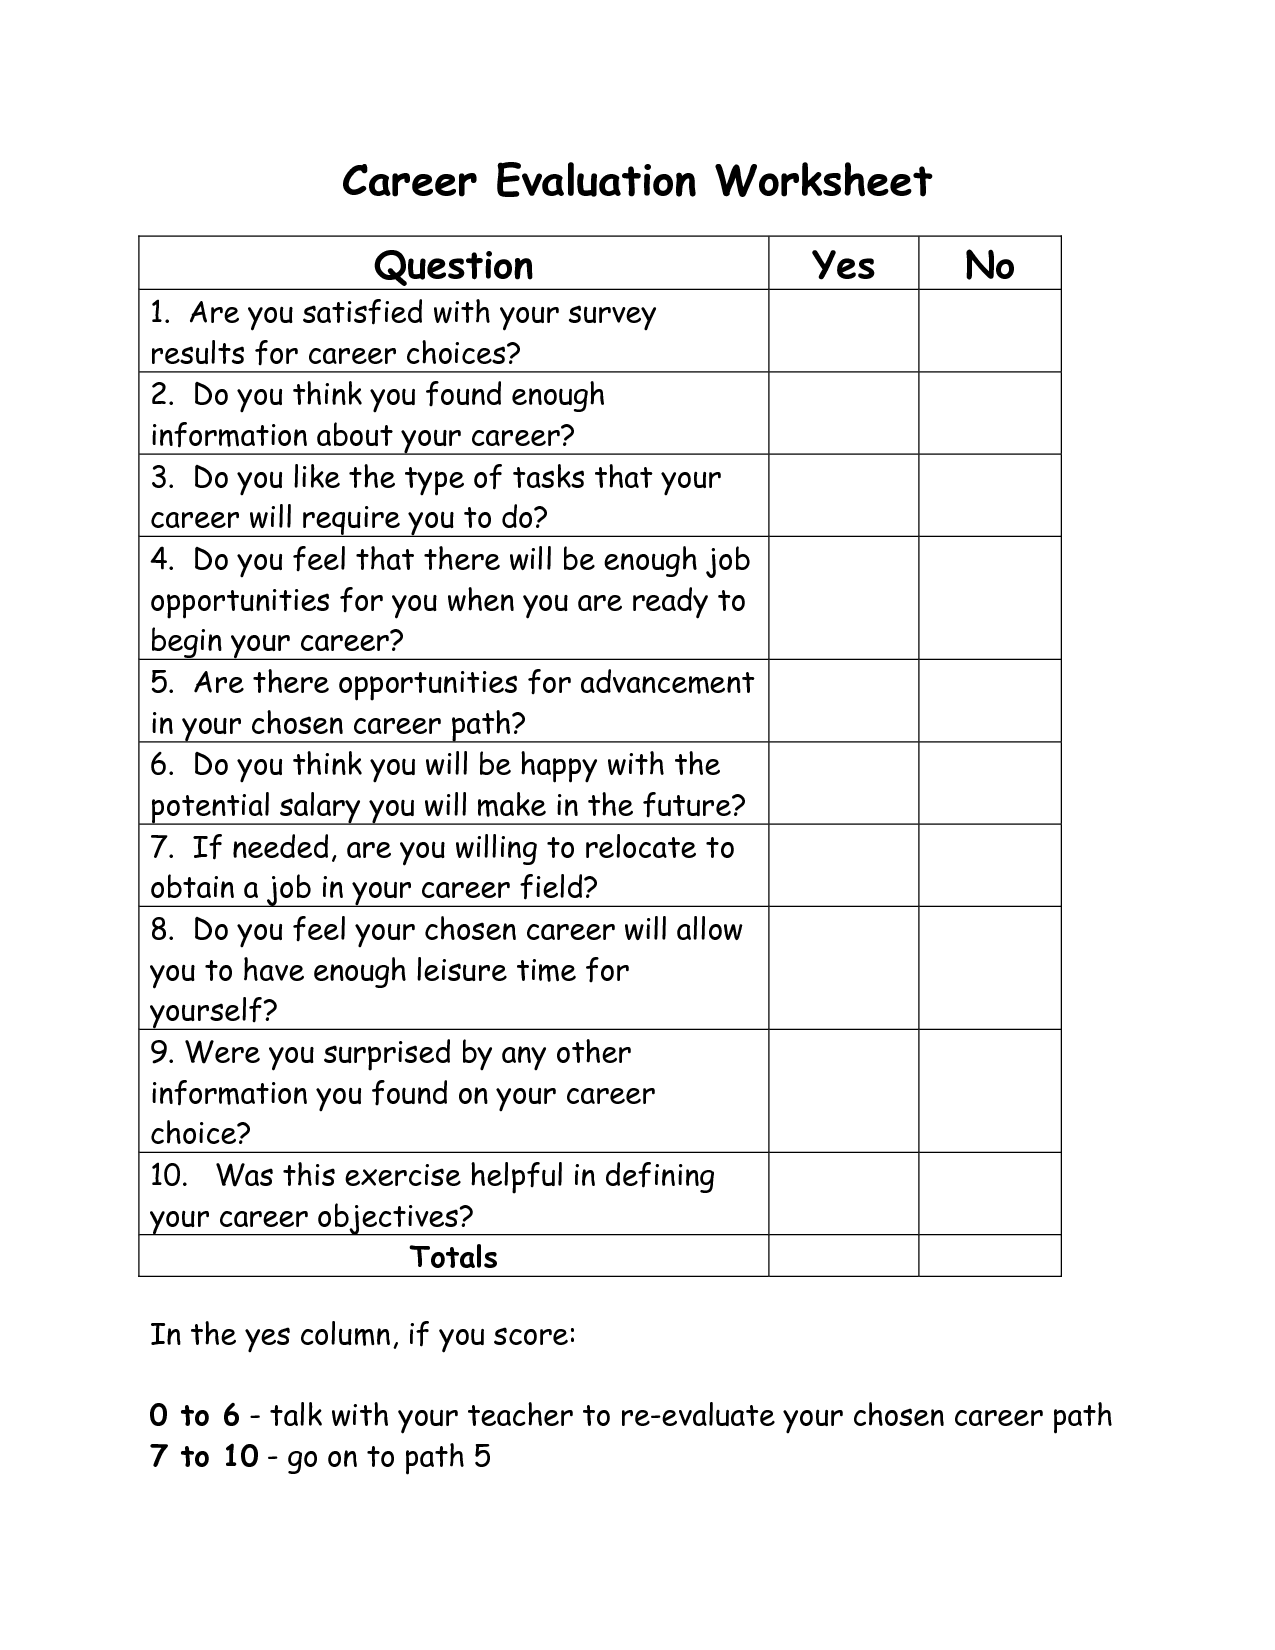 Career Evaluation Worksheet Image